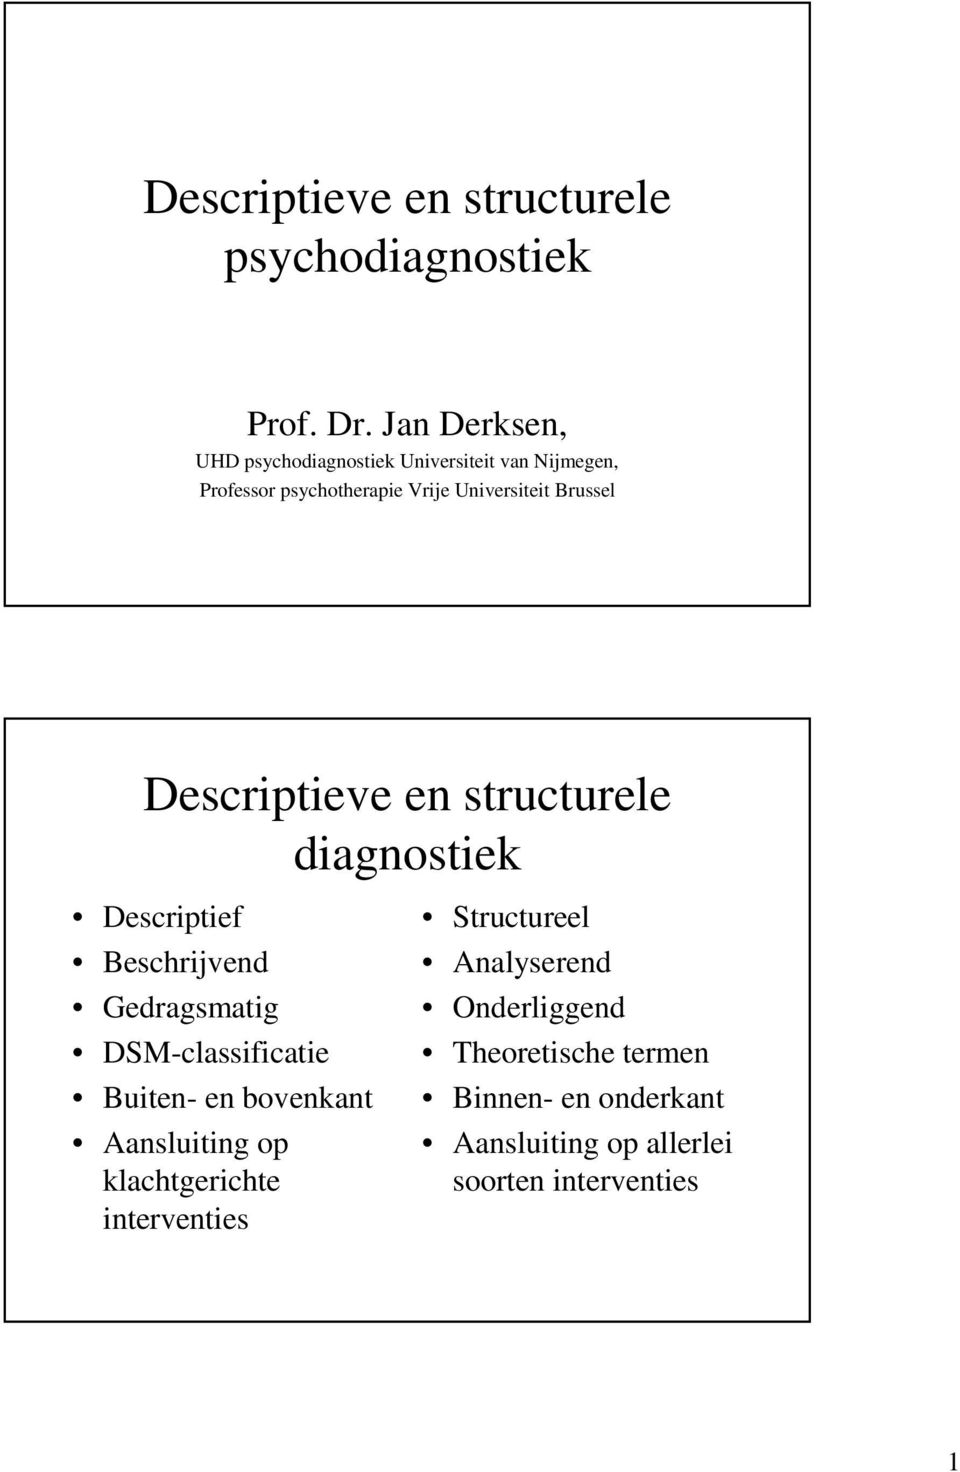 Descriptieve en structurele diagnostiek Descriptief Beschrijvend Gedragsmatig DSM-classificatie Buiten- en